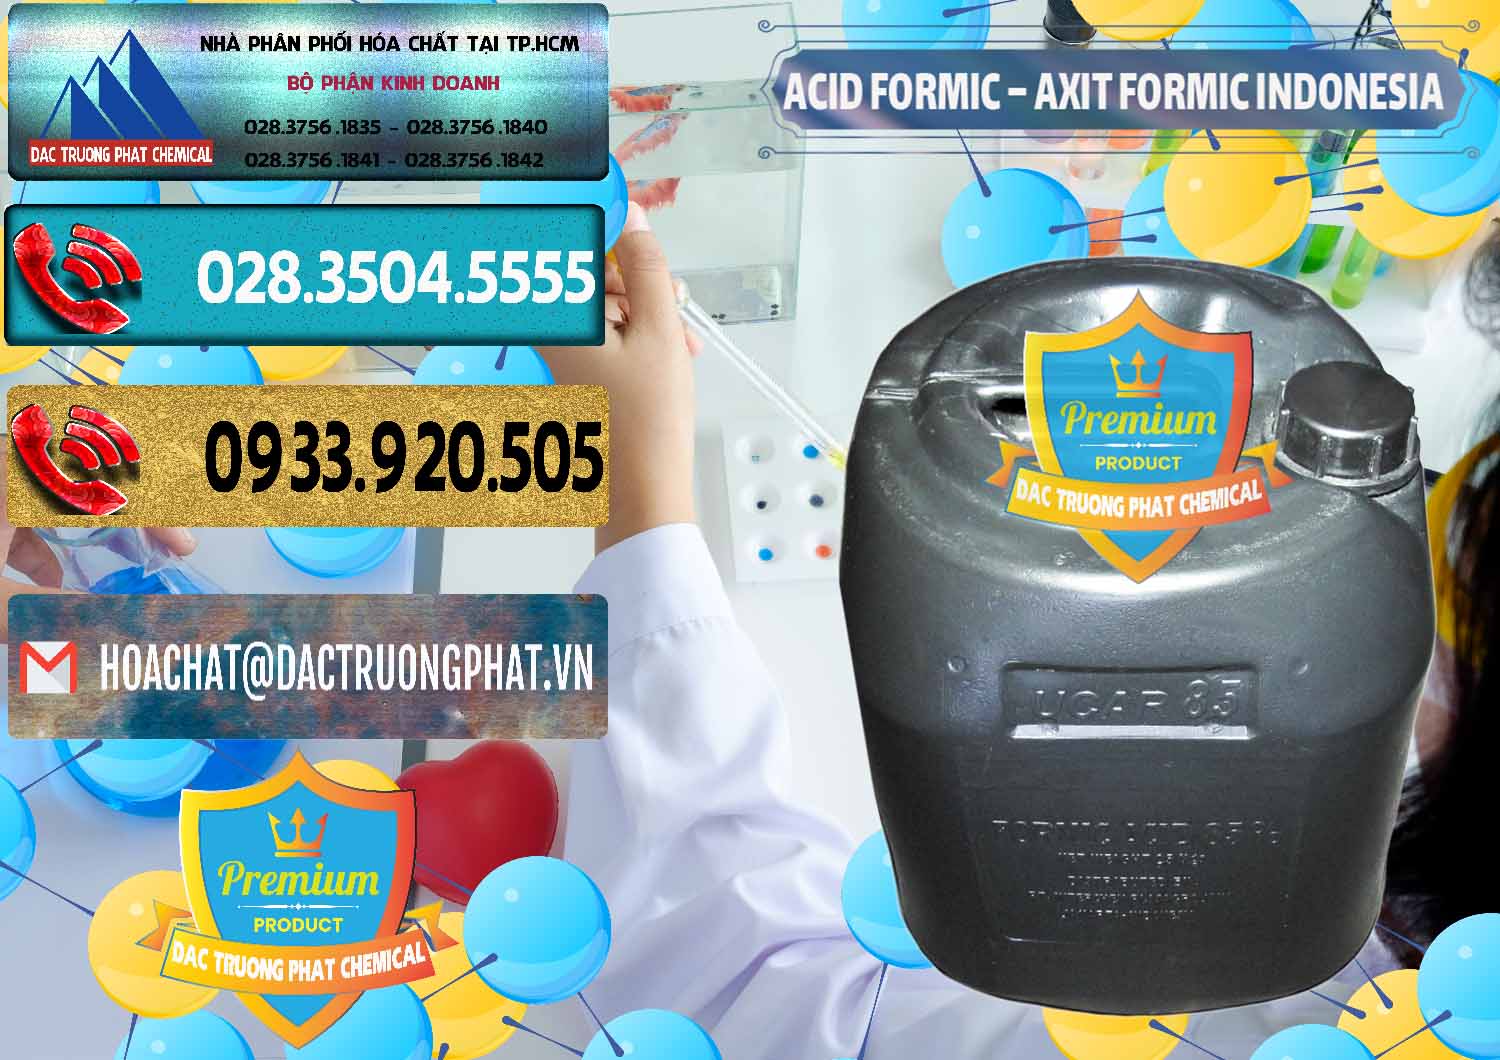 Chuyên cung ứng ( bán ) Acid Formic - Axit Formic Indonesia - 0026 - Cty phân phối & cung ứng hóa chất tại TP.HCM - hoachatdetnhuom.com